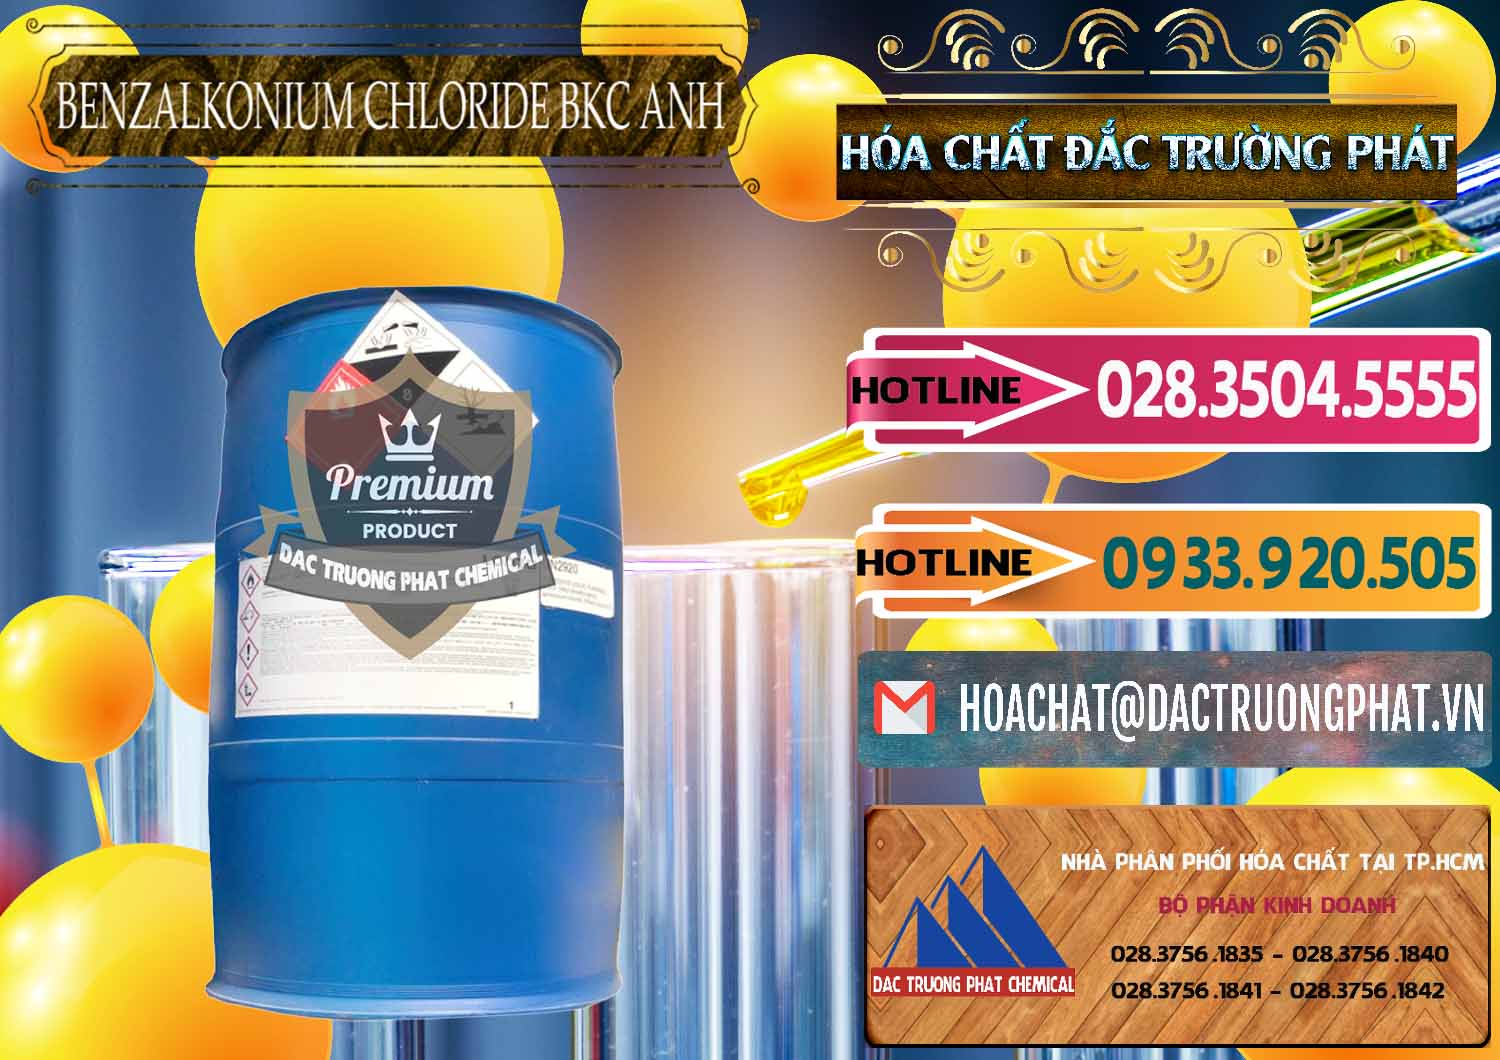 Đơn vị cung cấp - bán BKC - Benzalkonium Chloride 80% Anh Quốc Uk Kingdoms - 0457 - Cty cung cấp ( nhập khẩu ) hóa chất tại TP.HCM - dactruongphat.vn